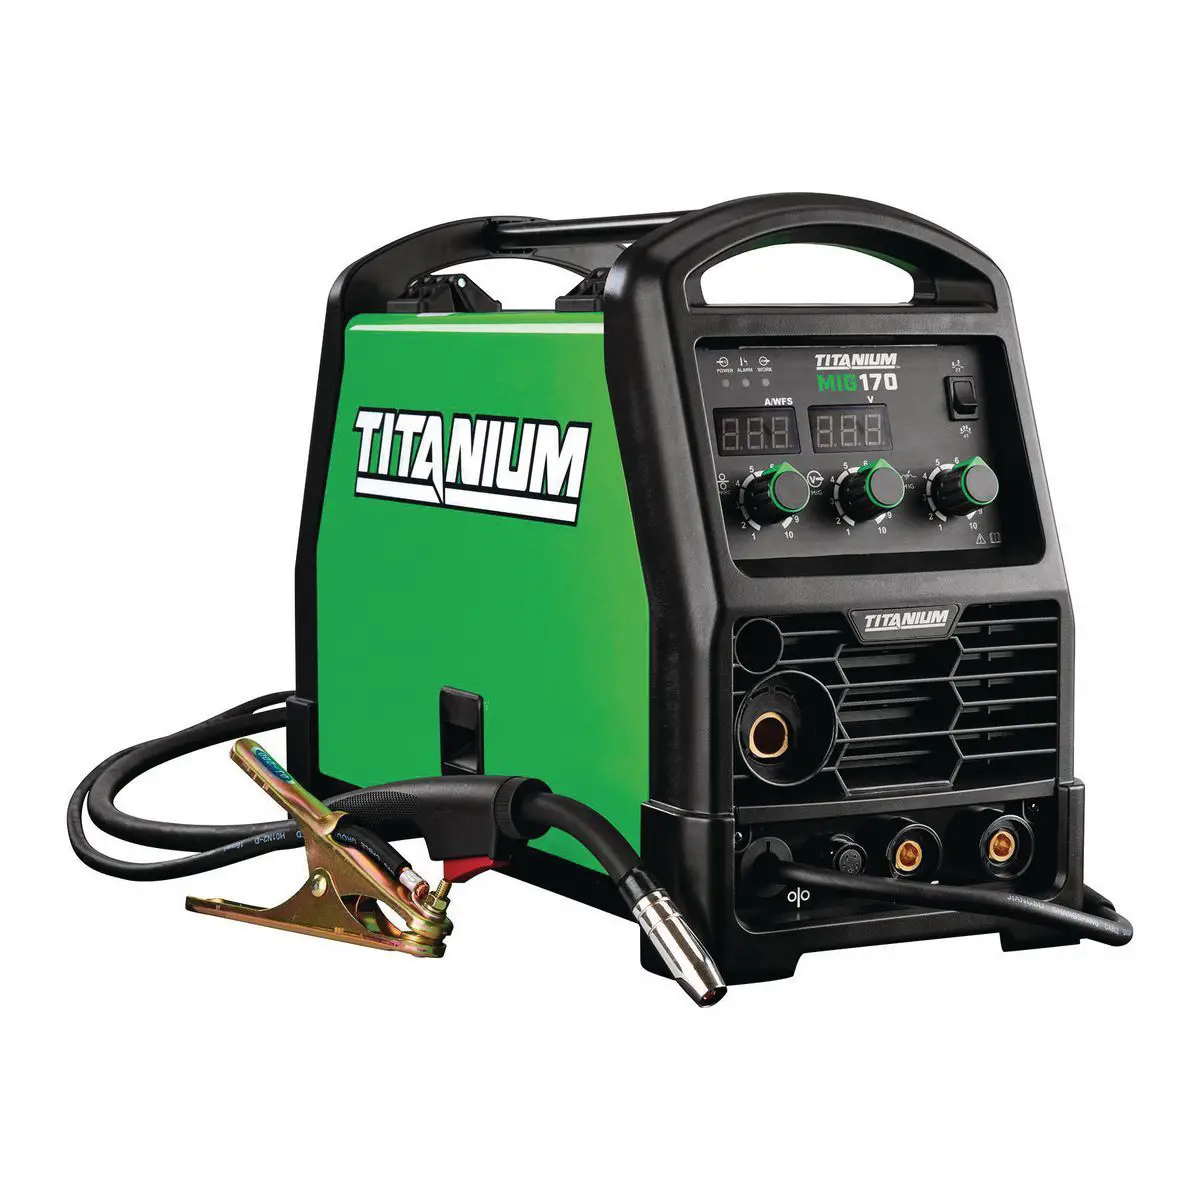 Titanium 170 Welding Machine Review